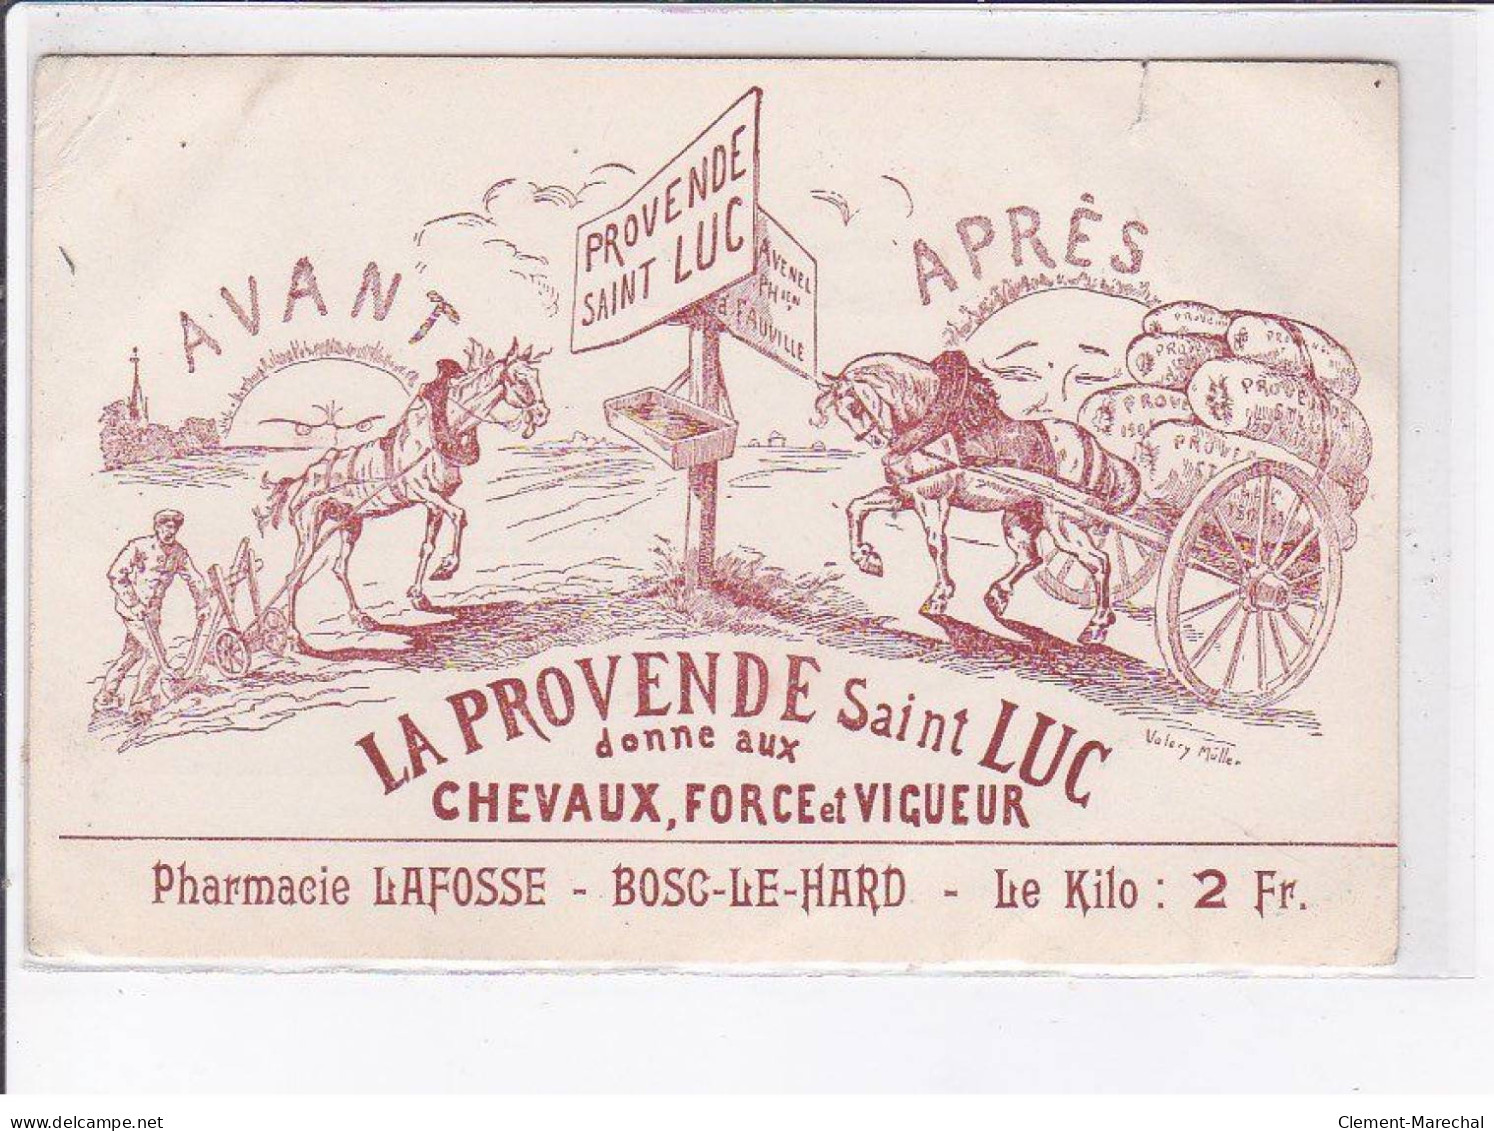 PUBLICITE: La Provende Saint-luc Donne Aux Chevaux, Force Et Vigueur, Pharmacie Lafosse, Bosc-le-hard - état - Publicité